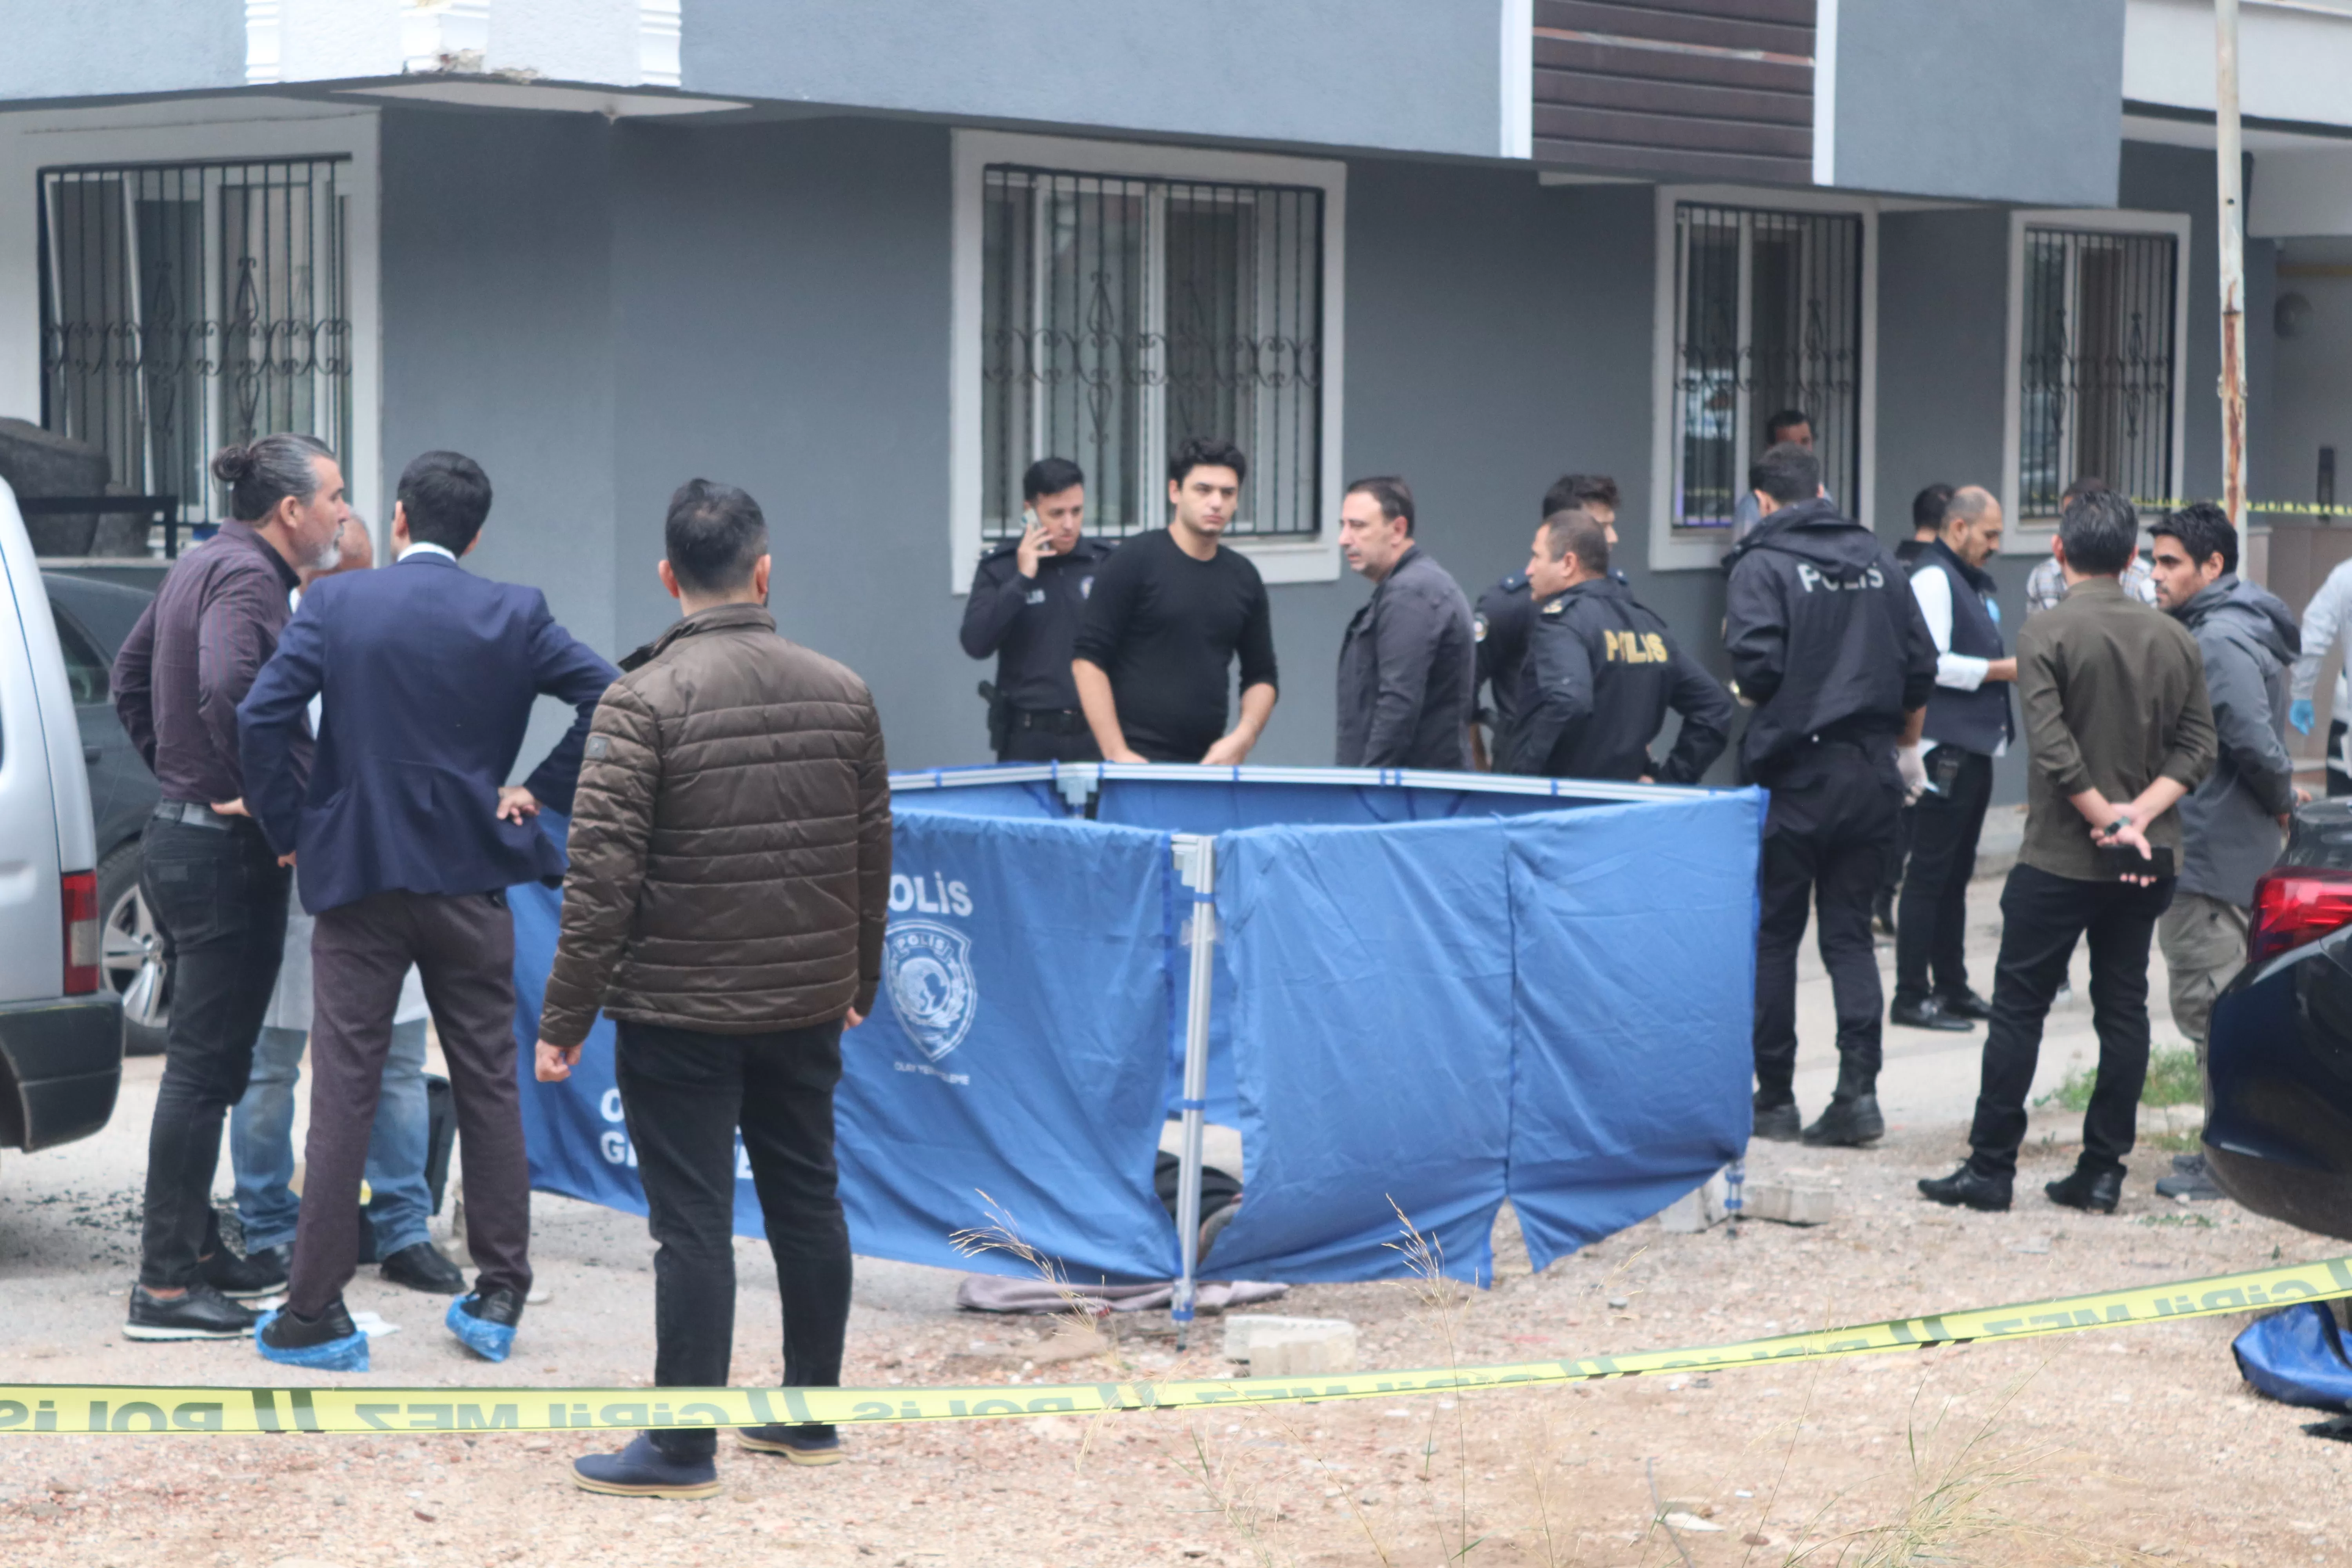 İzmir'in Buca ilçesinde dün meydana gelen silahlı saldırı olayında, bir araca düzenlenen saldırı sonucunda 1 kişi hayatını kaybetti, 2 kişi ise yaralandı.